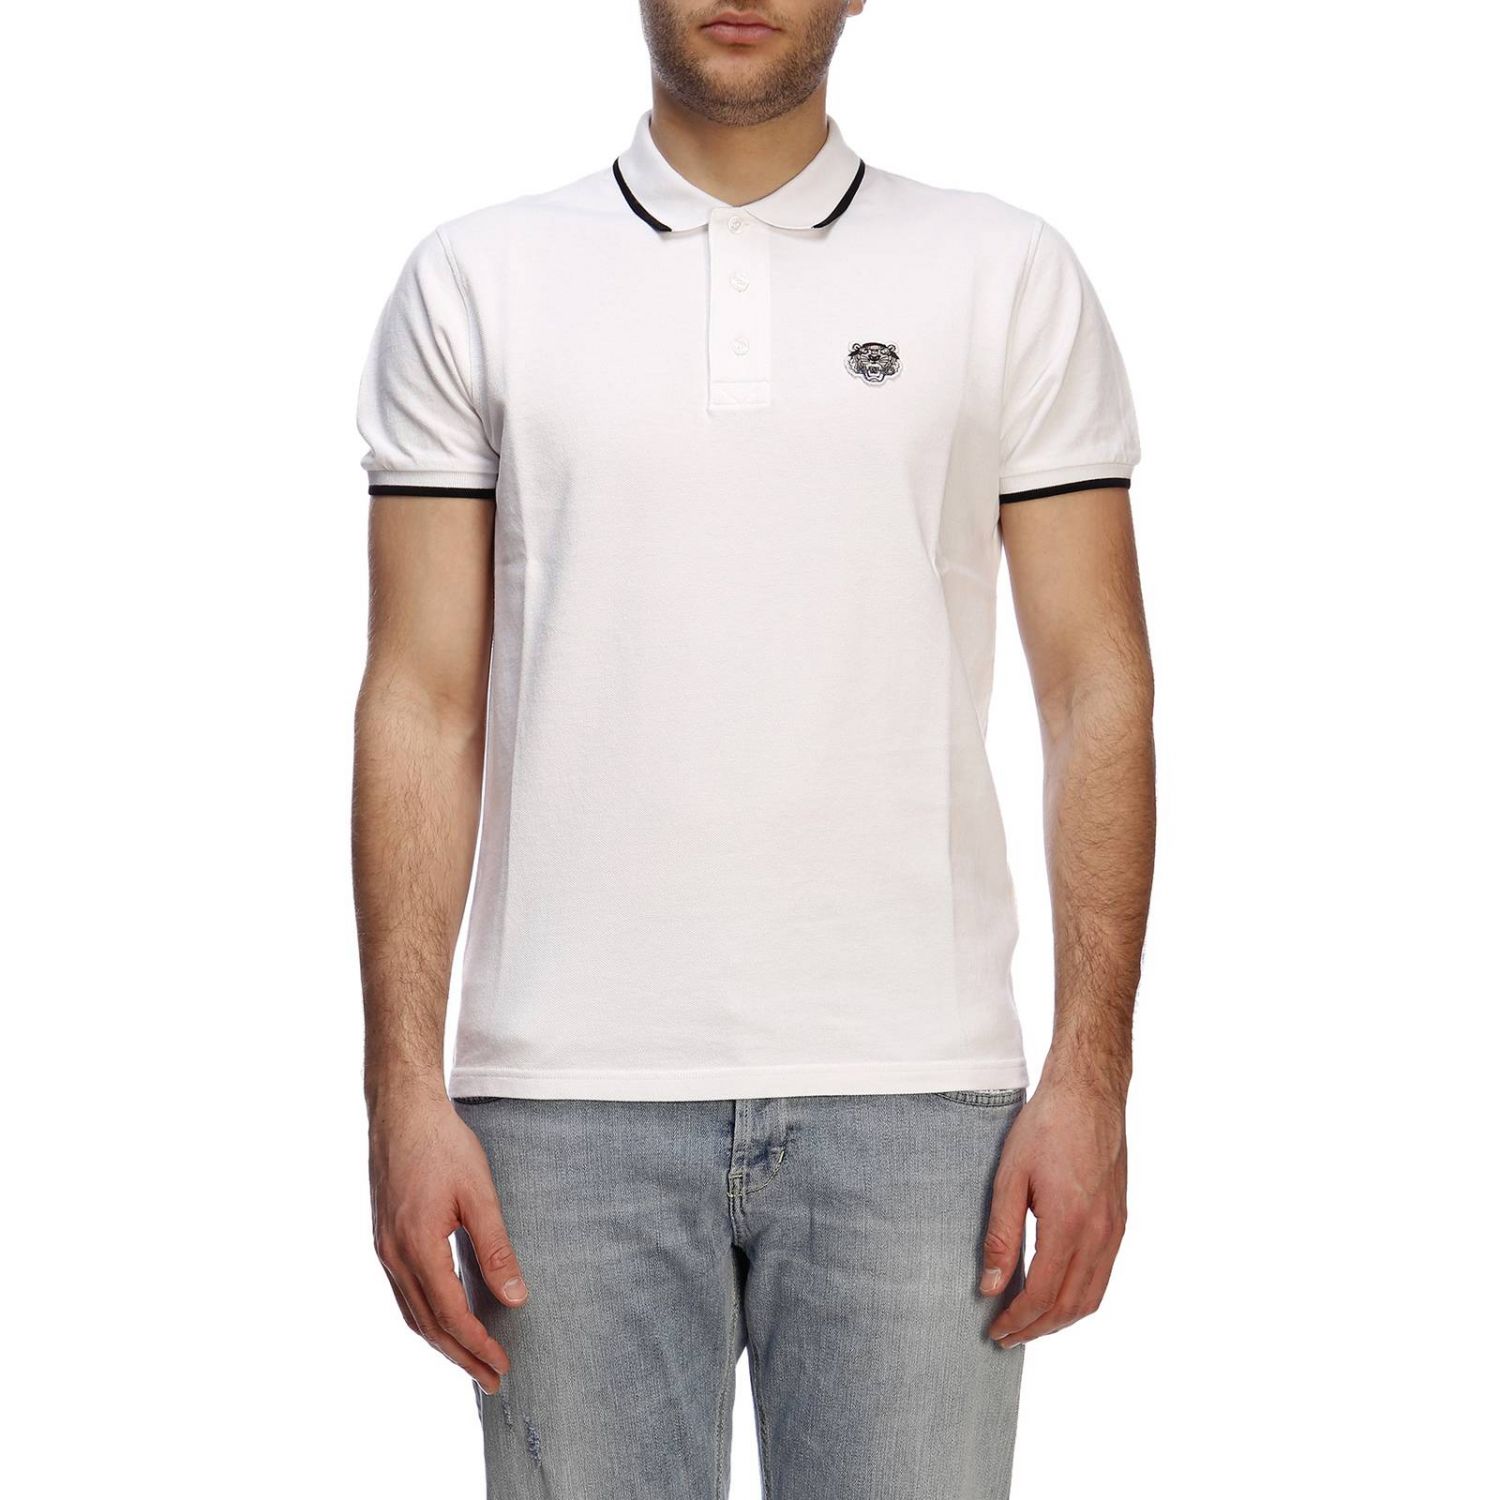 KENZO: T-shirt men | T-Shirt Kenzo Men White | T-Shirt Kenzo ...